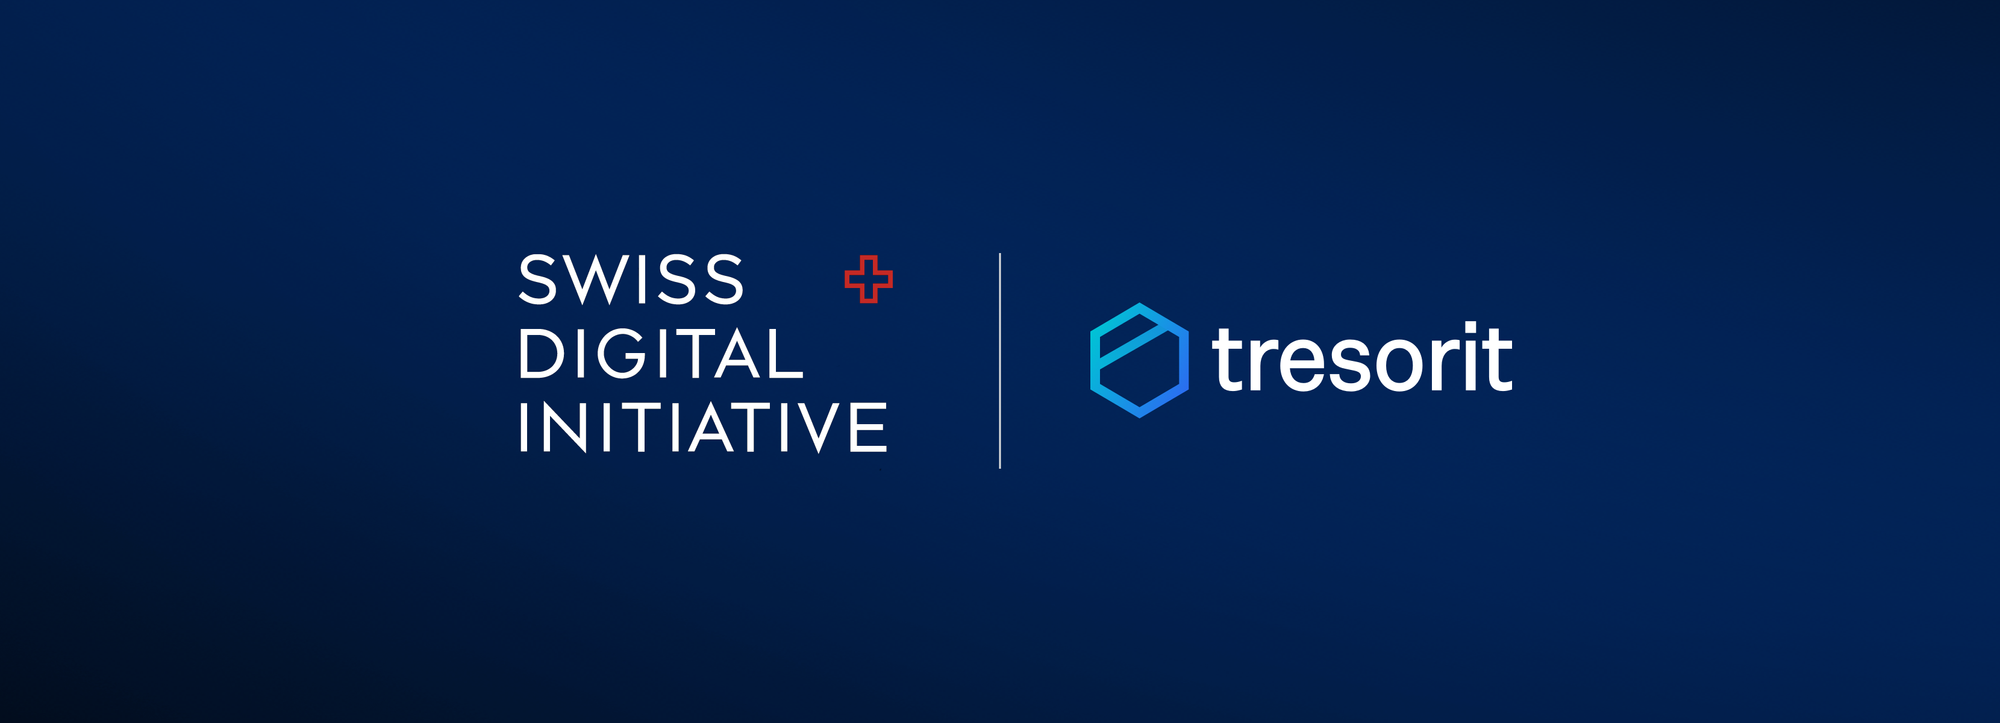 Tresorit joins Swiss Digital Trust Label scheme